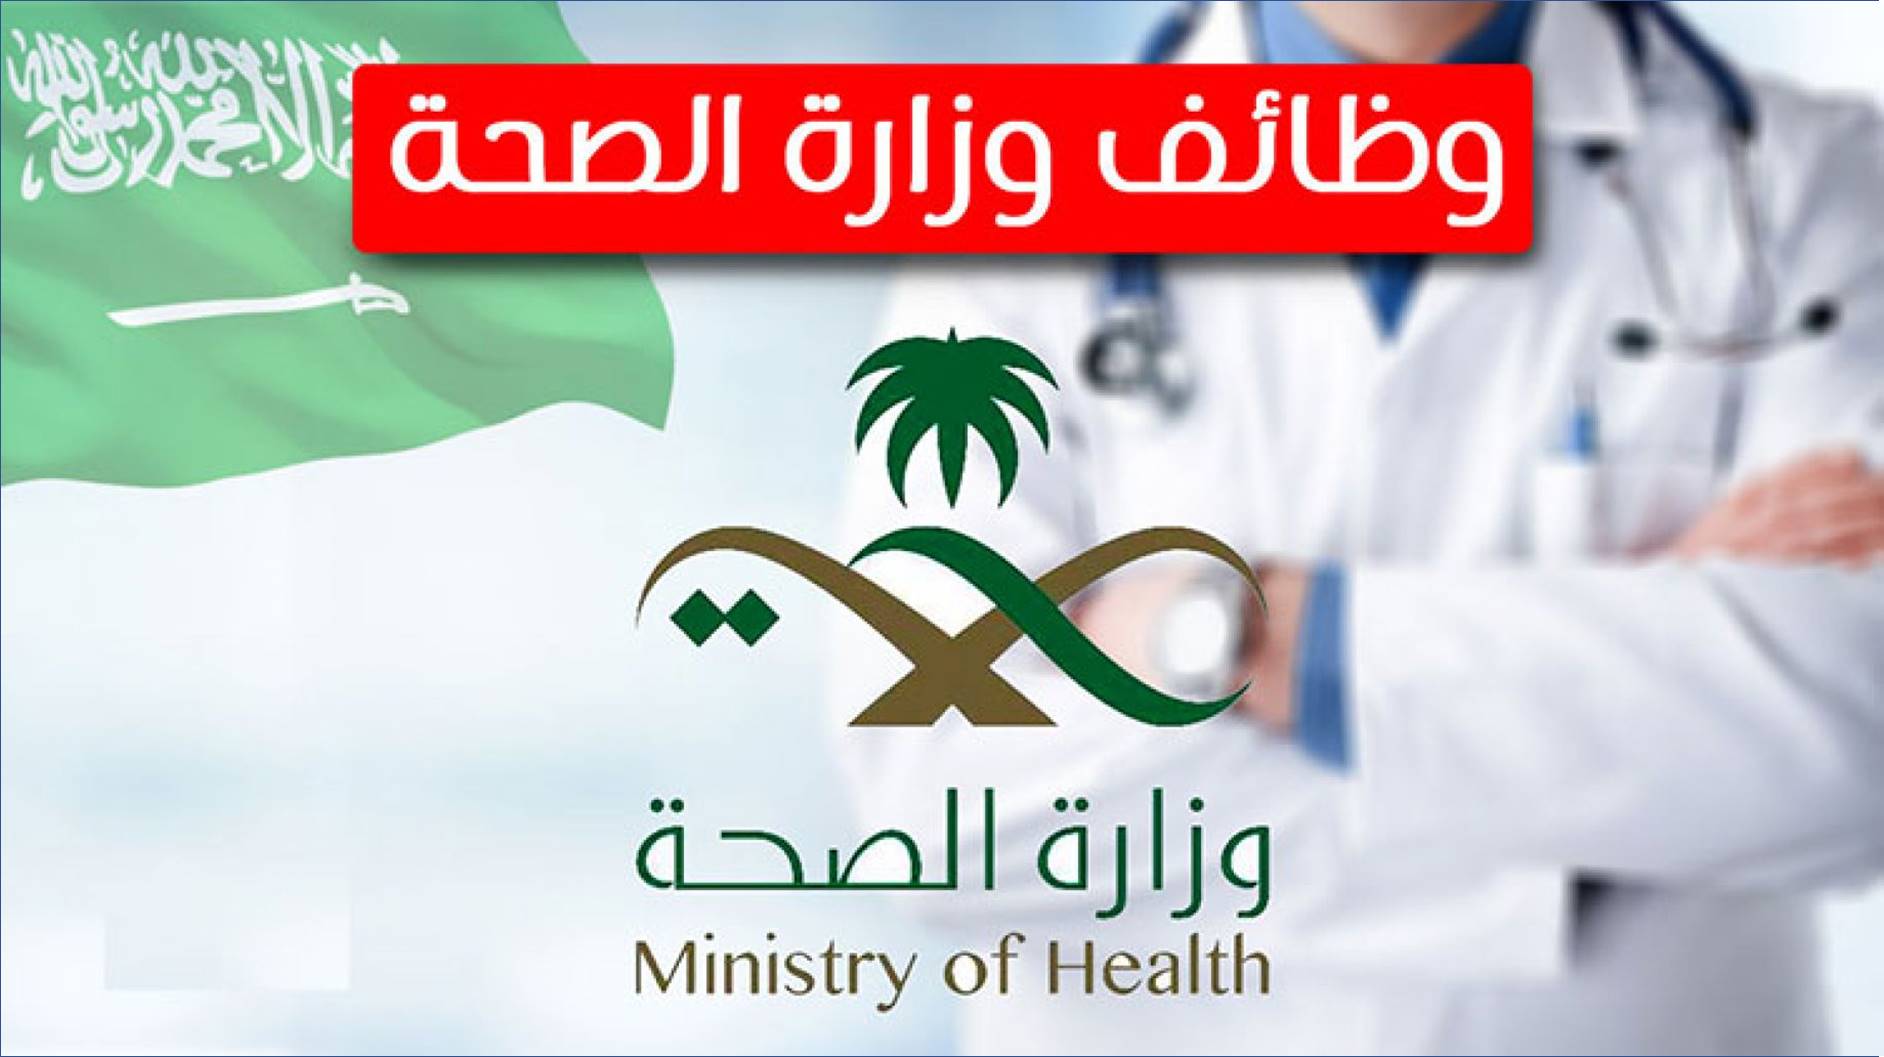 وظائف إدارية وتقنية ومالية في وزارة الصحة بالتجمع الصحي الأول